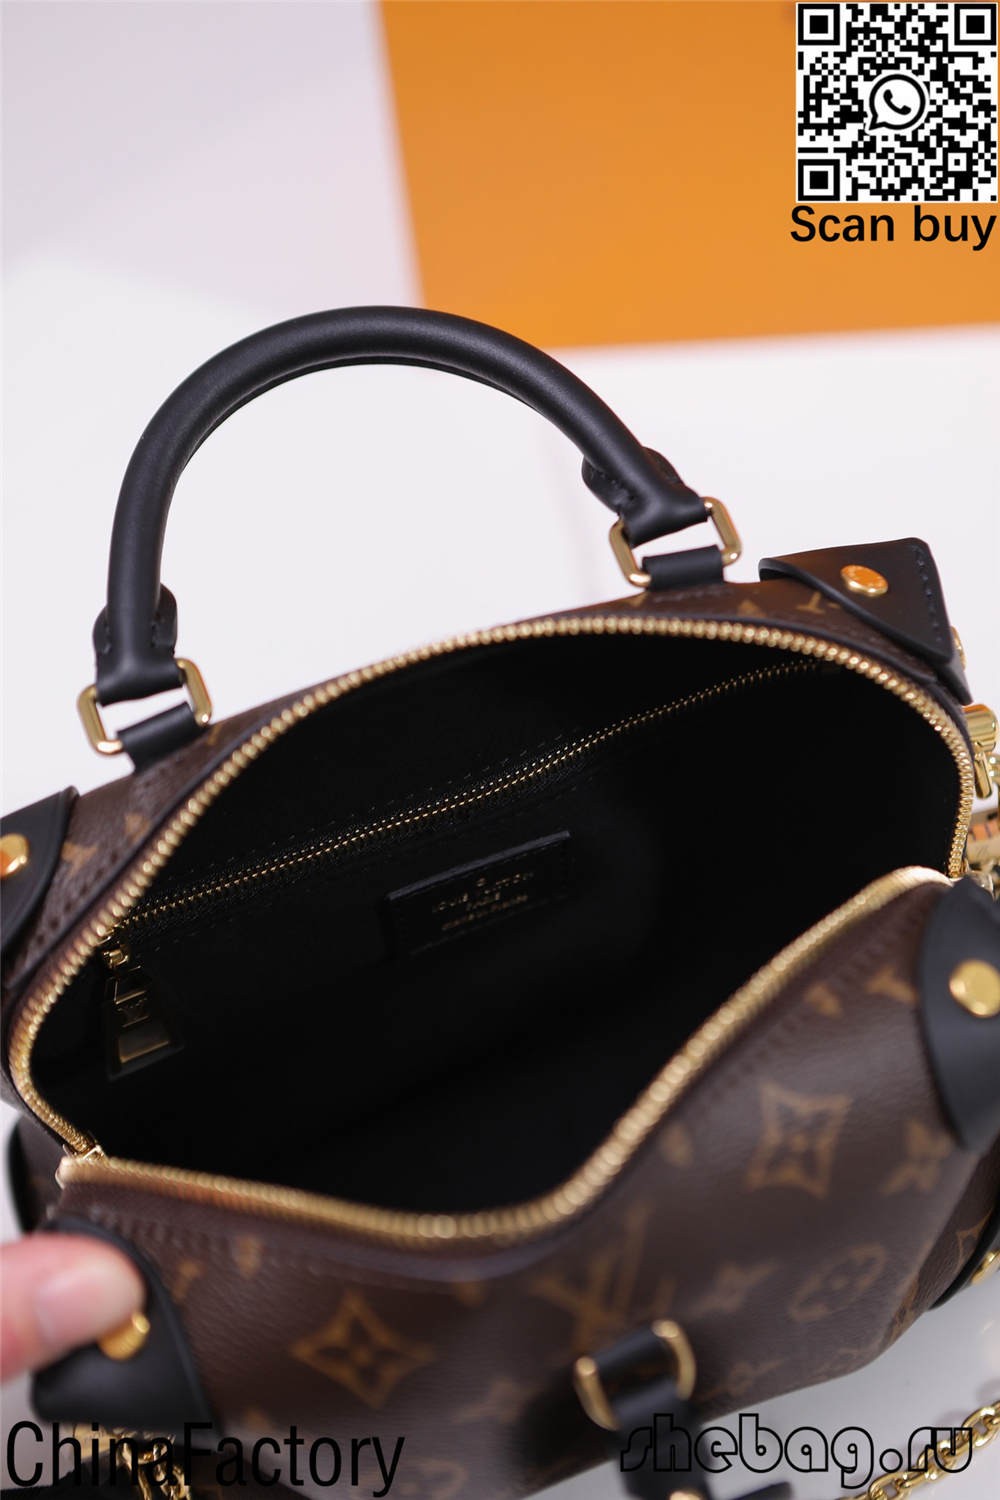 Louis Vuitton alma somas kopijas pirkšana (2022. gada jaunais izdevums) — labākās kvalitātes viltotās Louis Vuitton somas tiešsaistes veikals, dizainera somas kopija ru